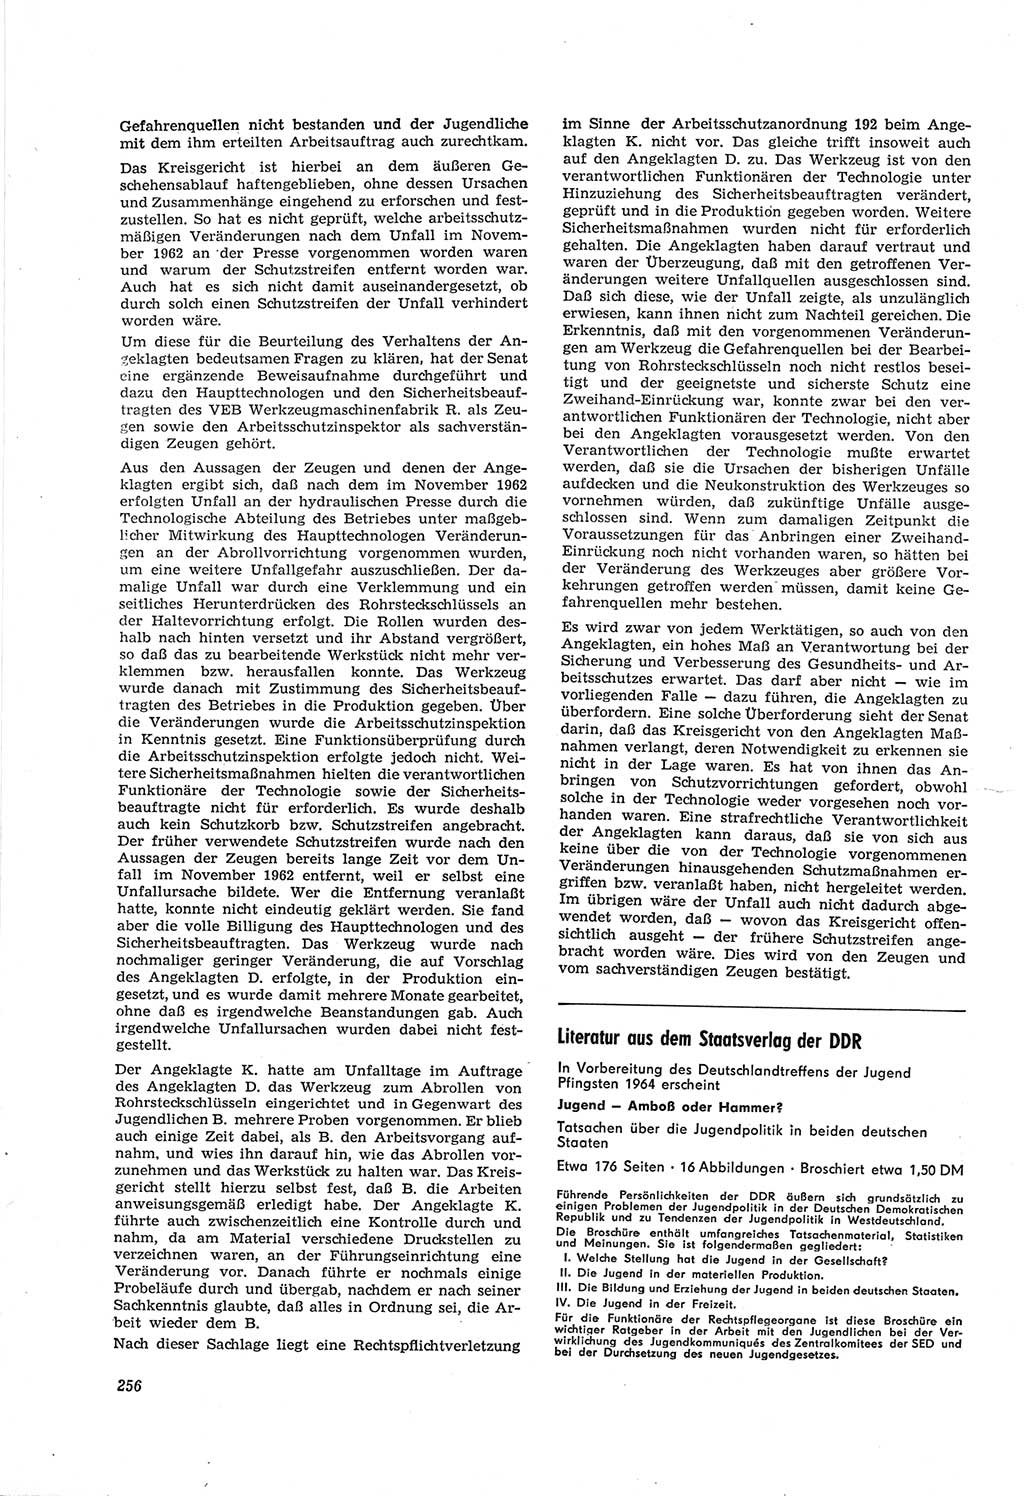 Neue Justiz (NJ), Zeitschrift für Recht und Rechtswissenschaft [Deutsche Demokratische Republik (DDR)], 18. Jahrgang 1964, Seite 256 (NJ DDR 1964, S. 256)